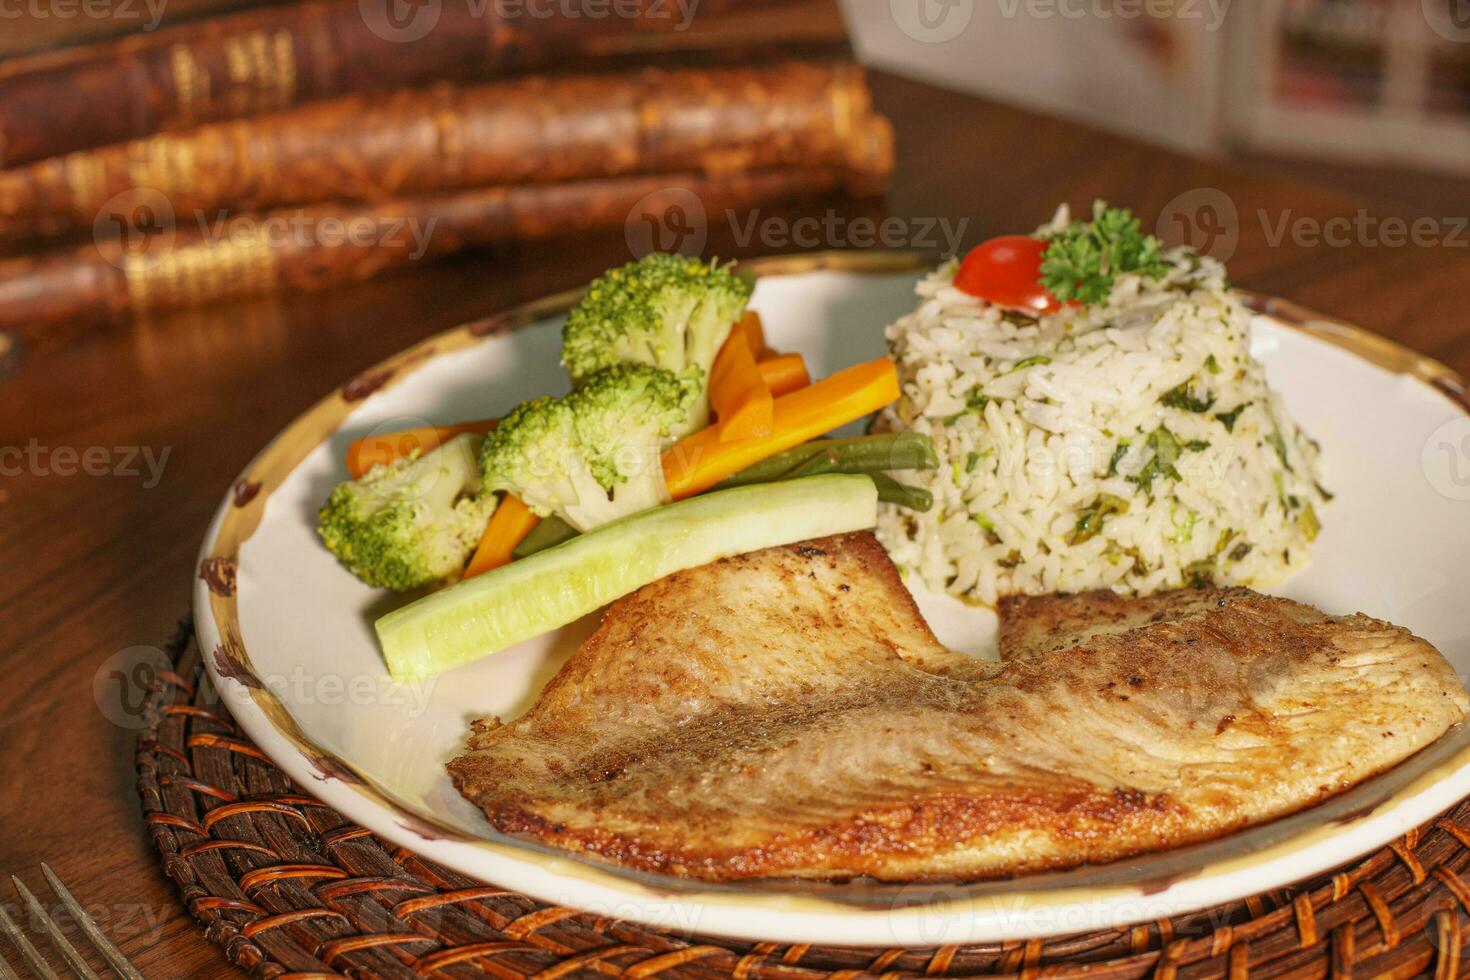 magnifique assiette de grillé poisson avec riz. dans le Contexte vieux livres photo